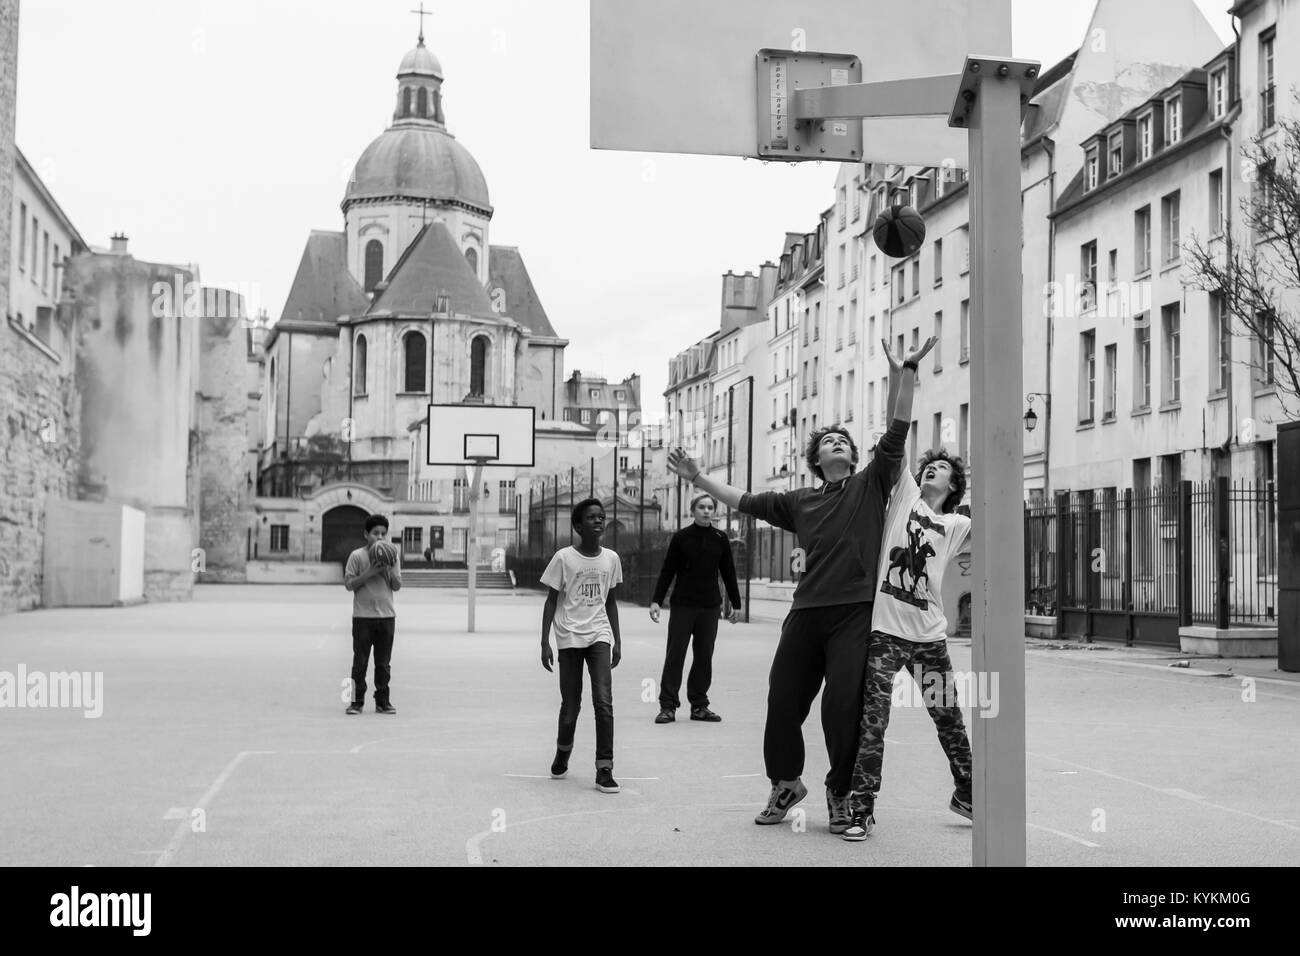 PARIS - Dec 30, 2013: Unbekannter Jungen spielen Basketball in einem offenen Raum zwischen Gebäuden in einer historischen Umgebung. Die Verwendung der Basketballkörbe Stockfoto